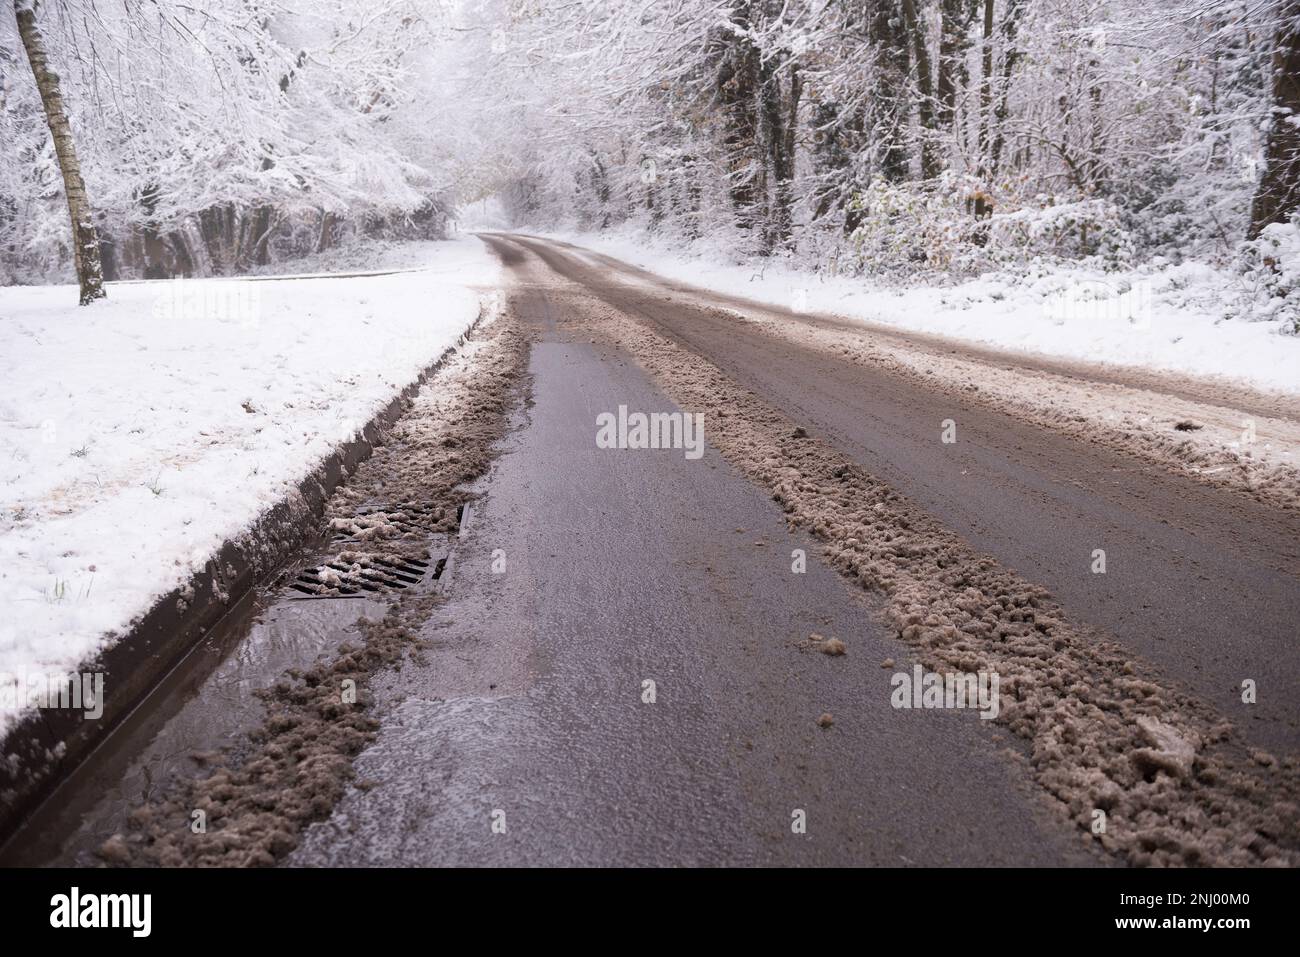 La propagation du sel sur les routes contribue à faire fondre la nouvelle chute de neige, mais la neige fondante commence à s'accumuler sur le trottoir et bloque les drains Banque D'Images